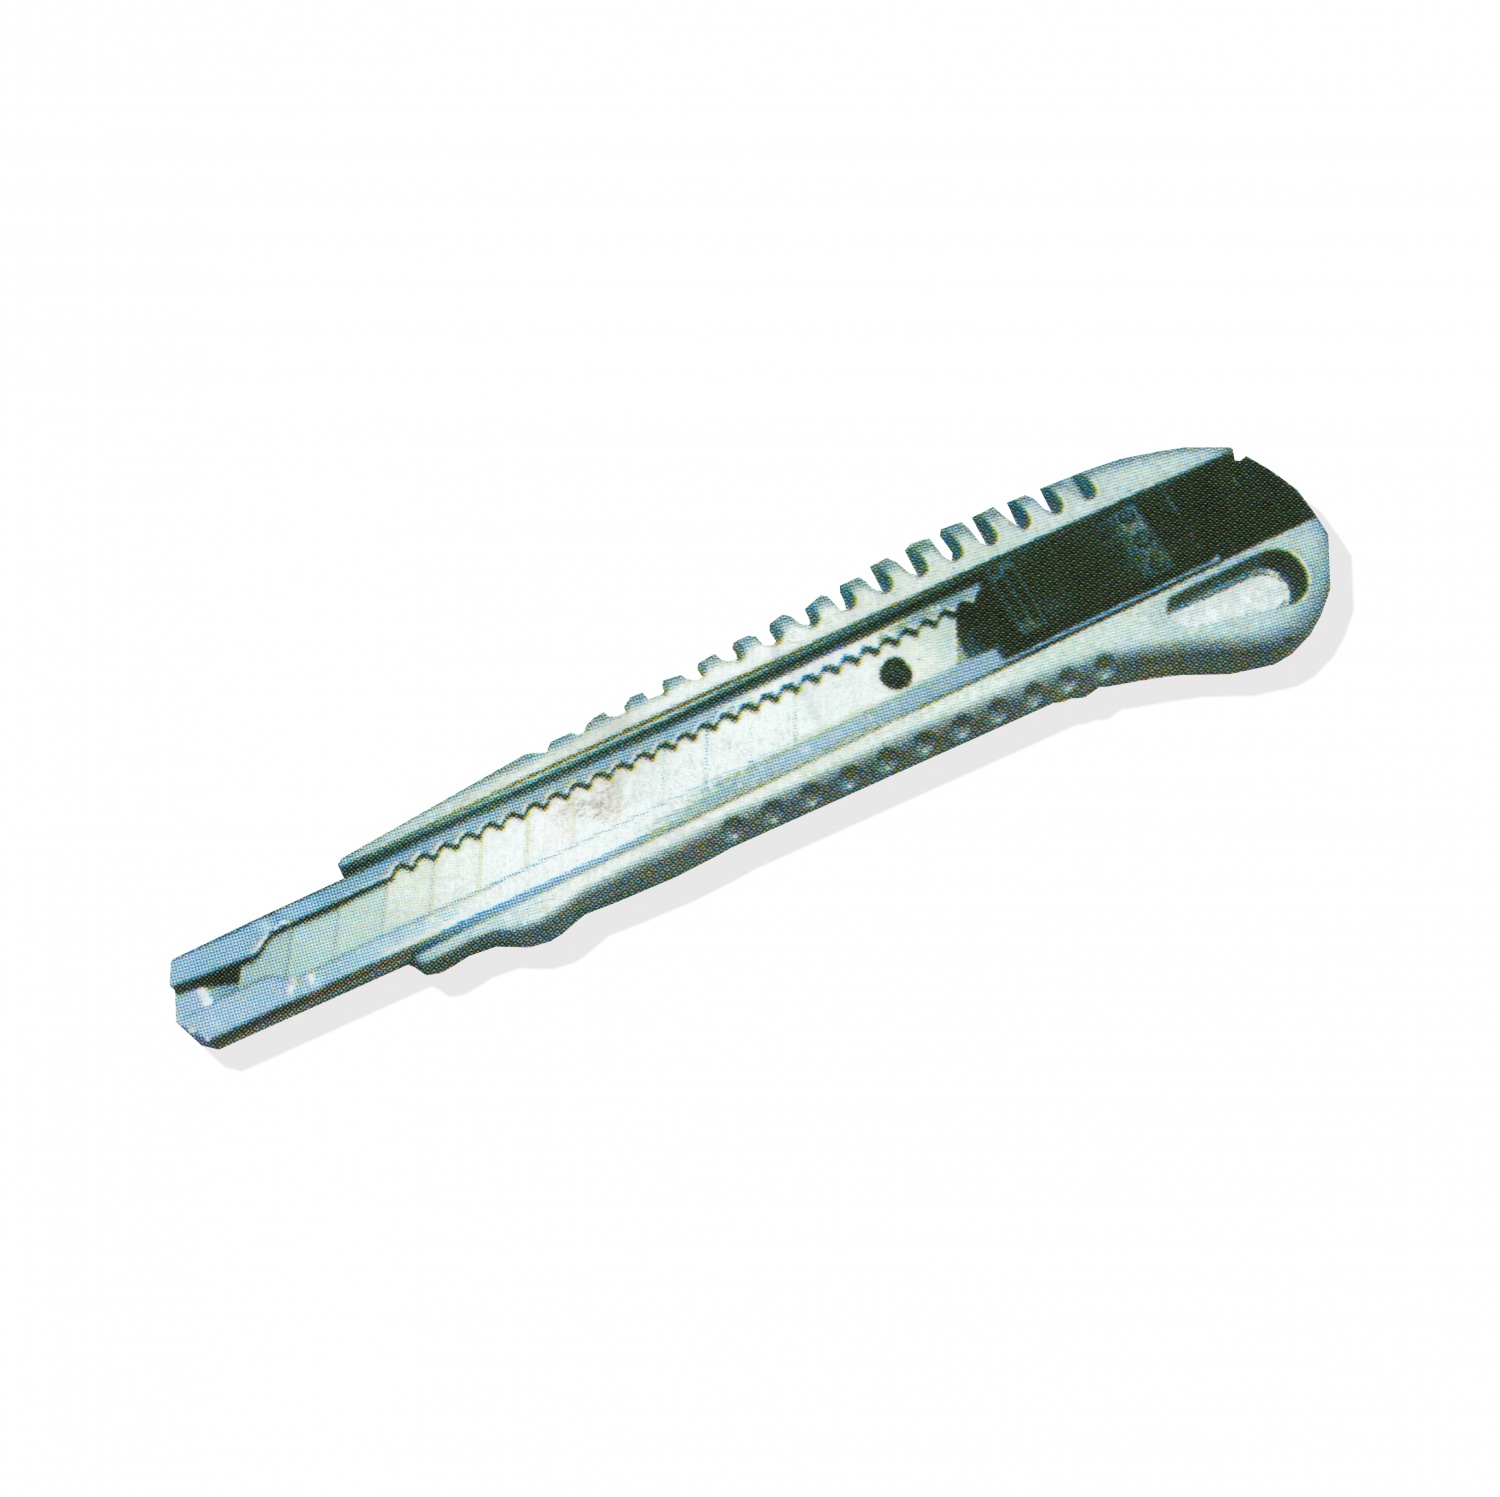 Cuttermesser, Abbrechmesser aus Metall, 9mm 